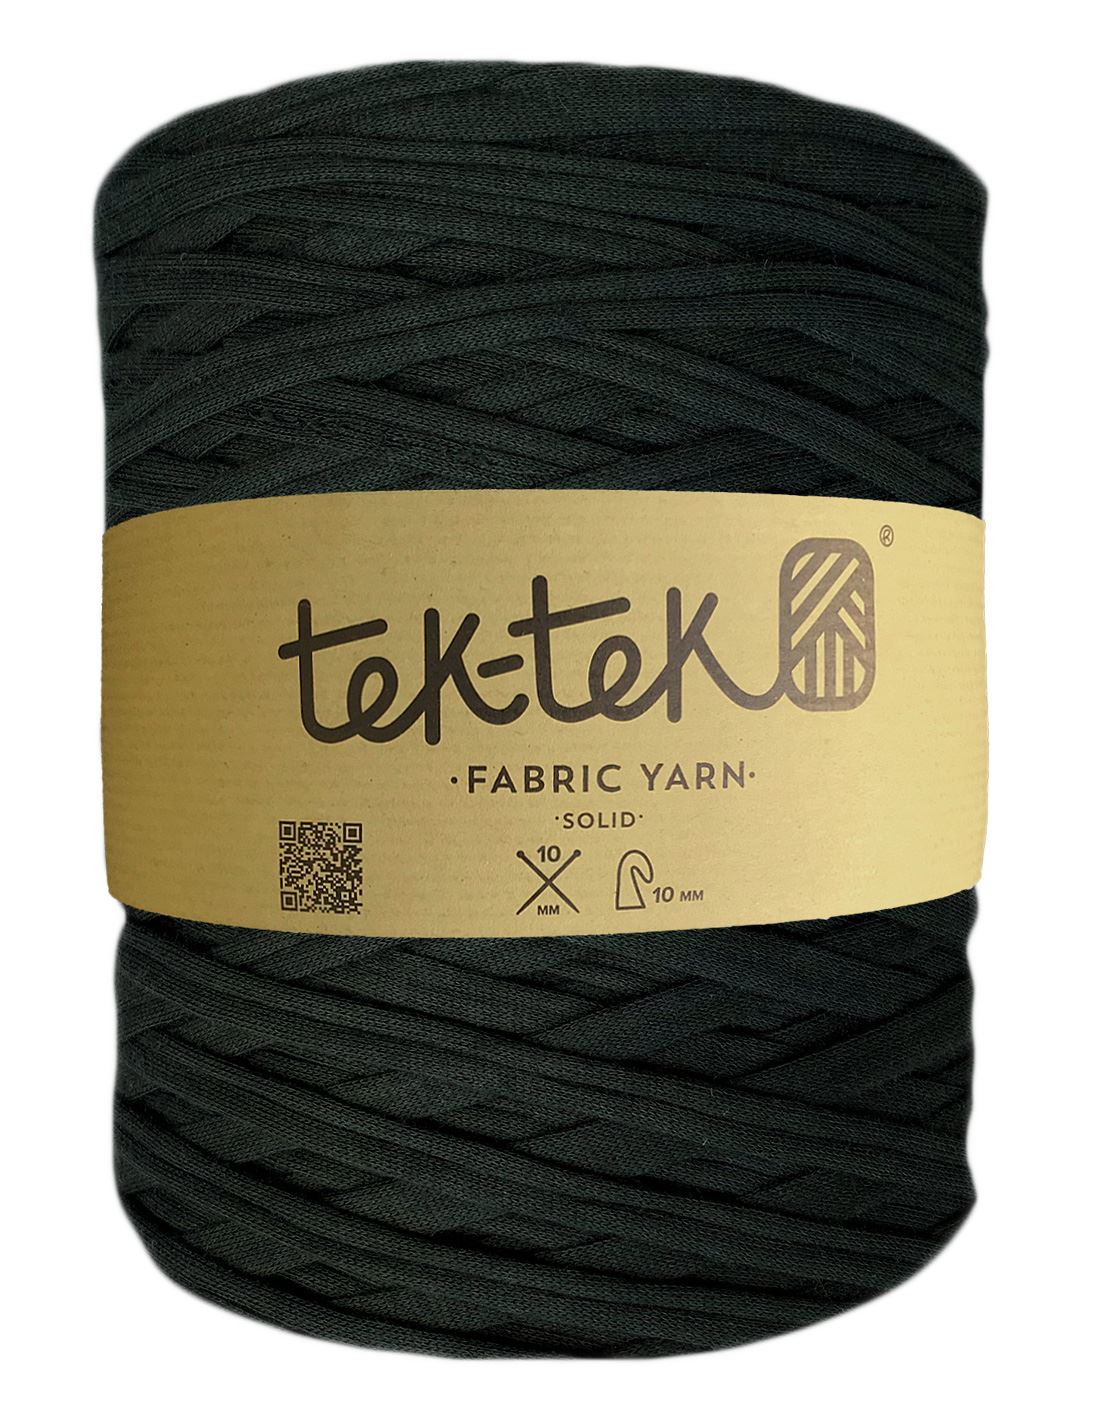 Off black t-shirt yarn by Tek-Tek (100-120m)